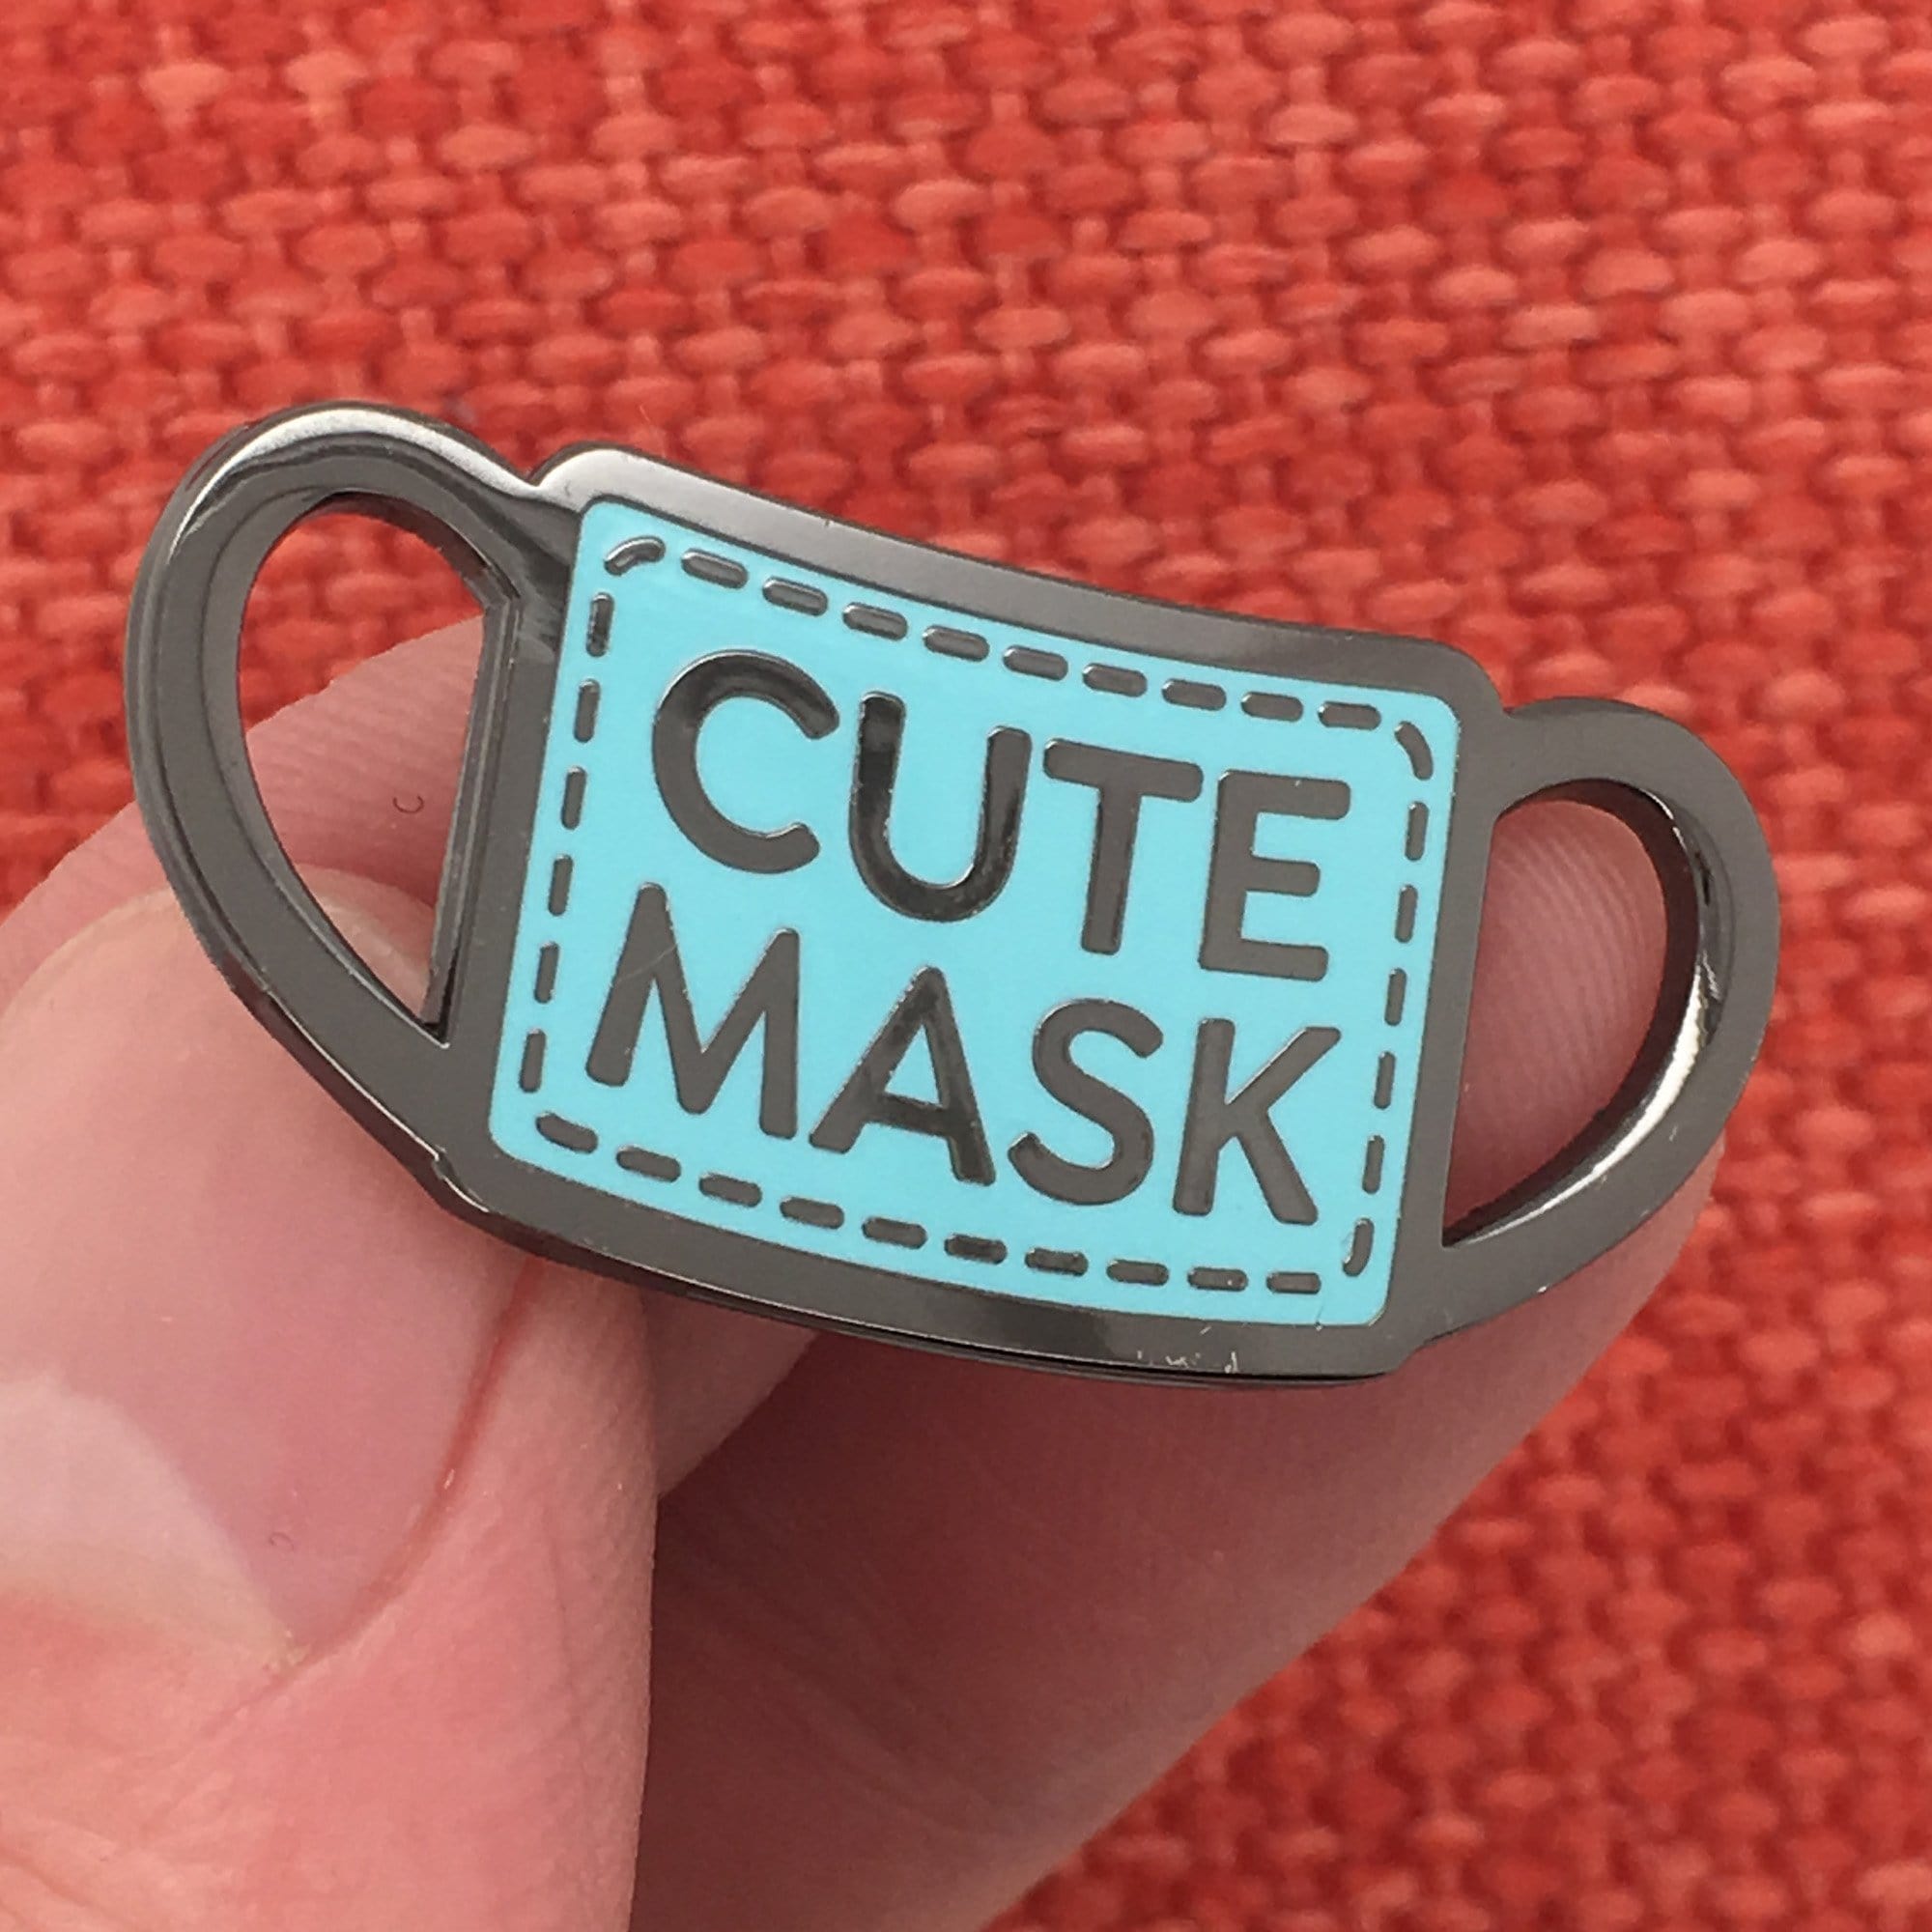 Cute Mask Pin